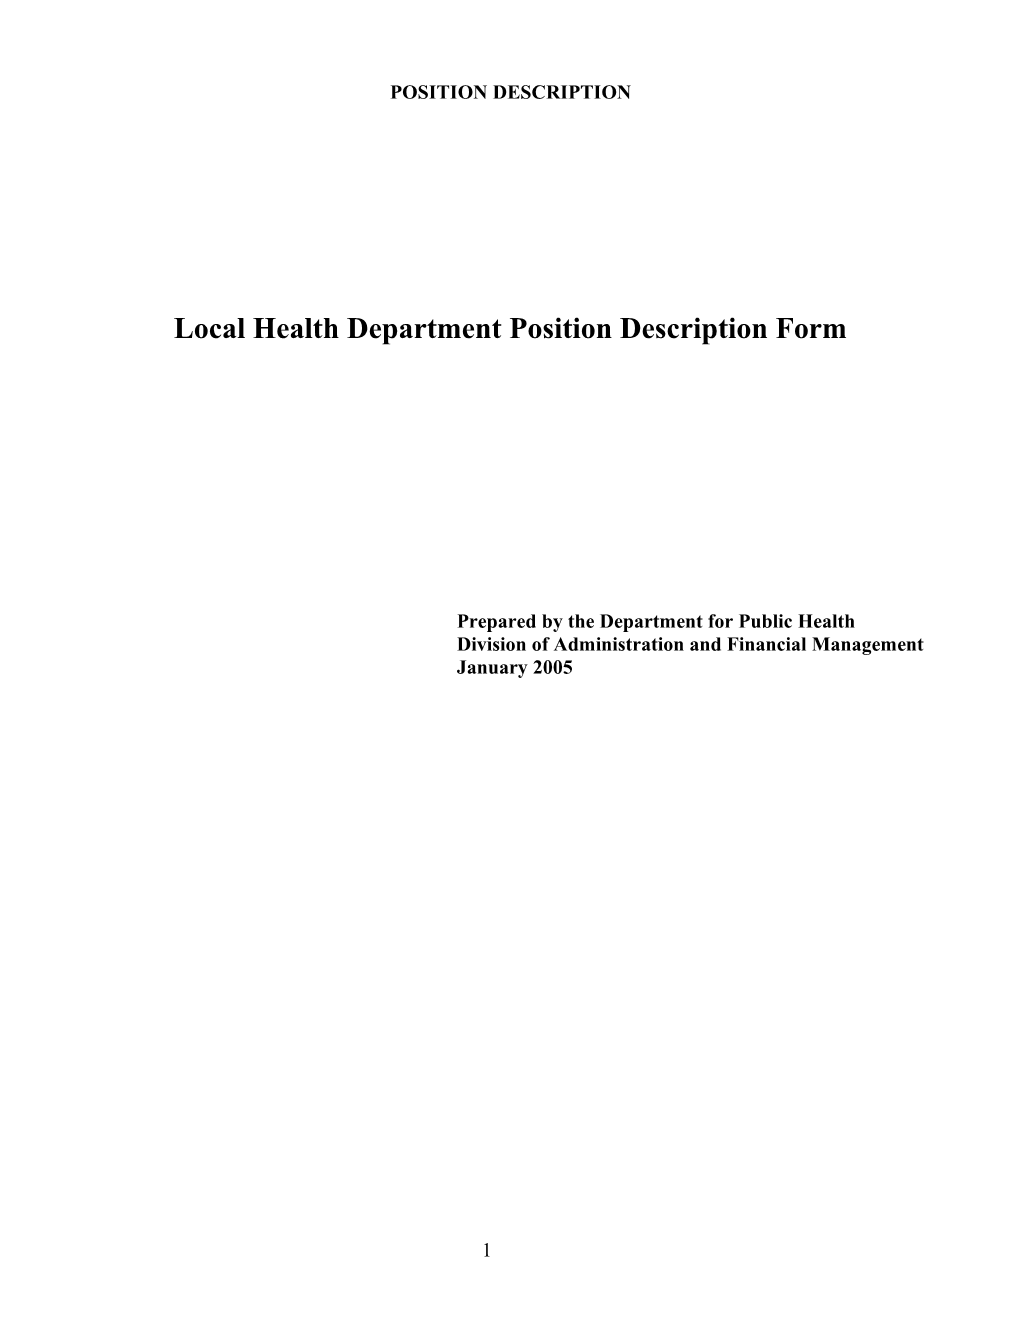 Local Health Department Position Description Form